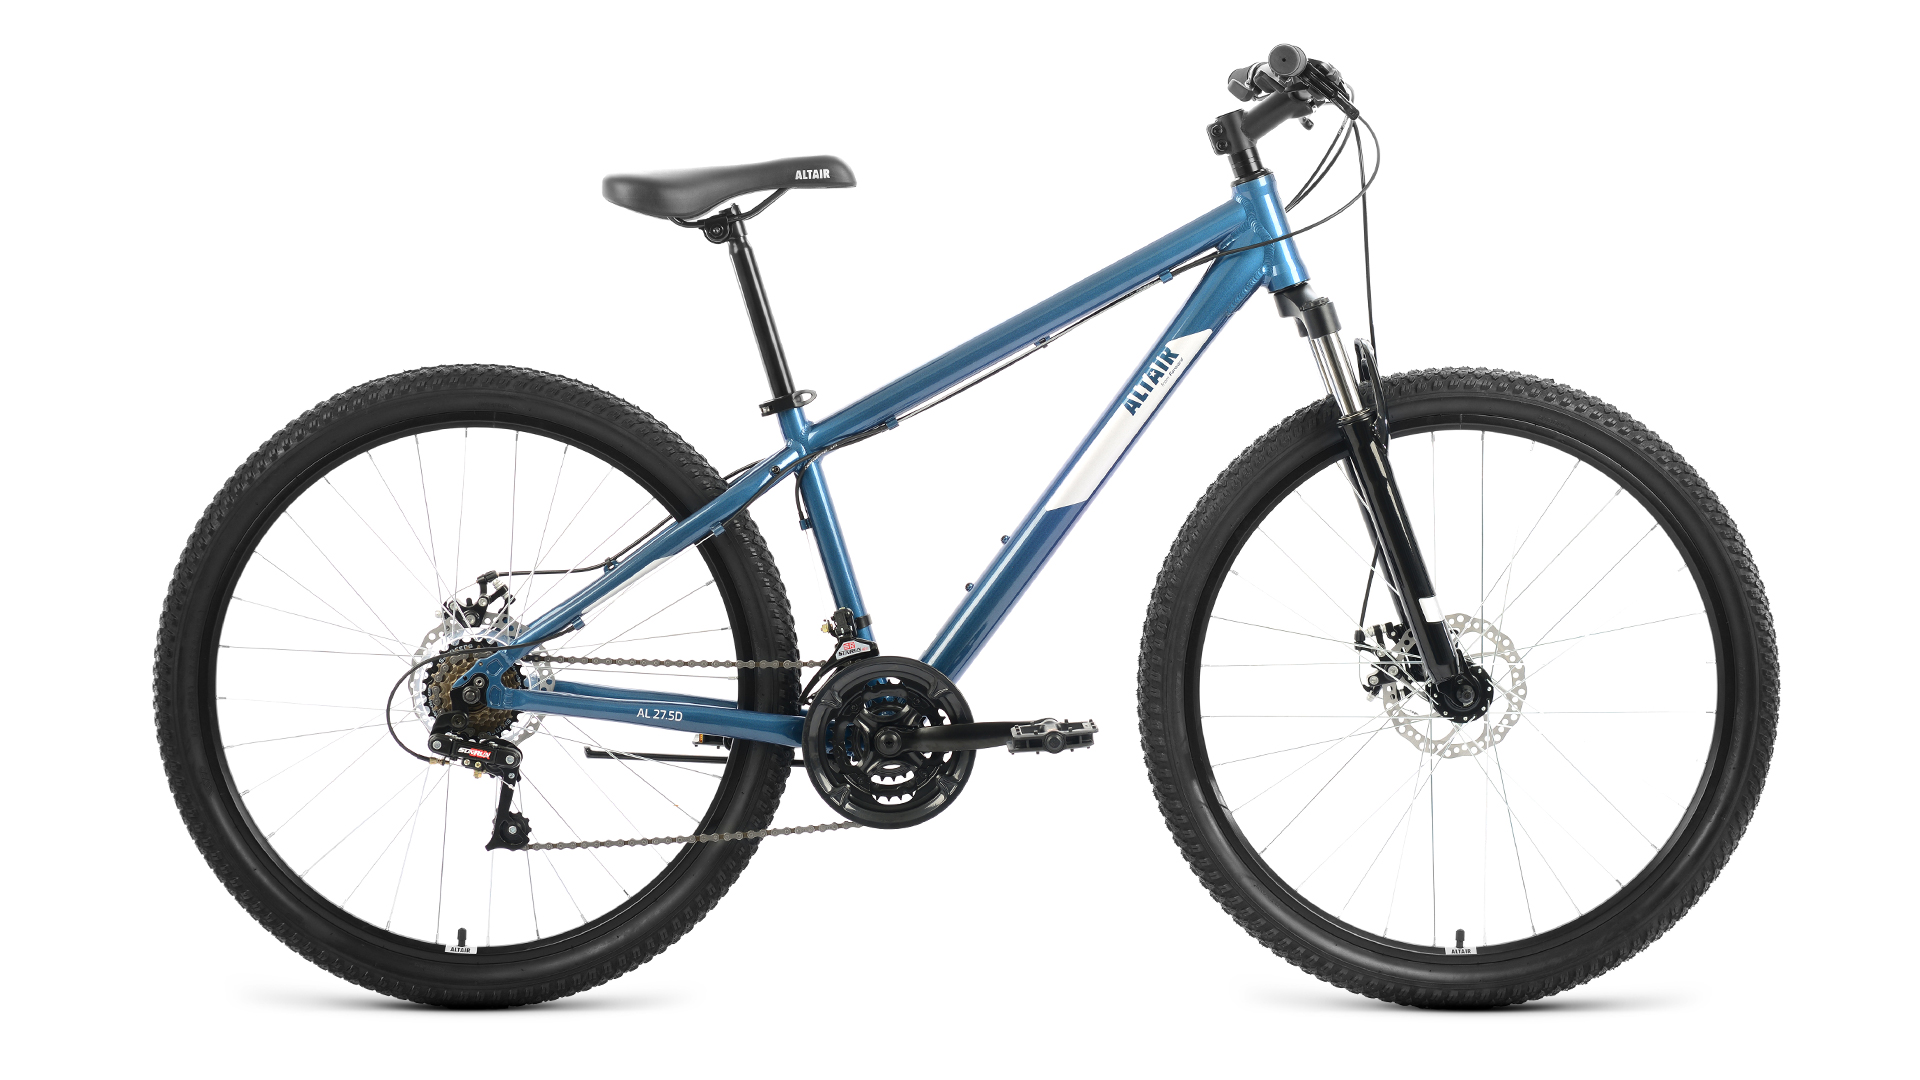 Горный велосипед Altair AL 27.5 D, год 2022, цвет Синий-Серебристый, ростовка 15